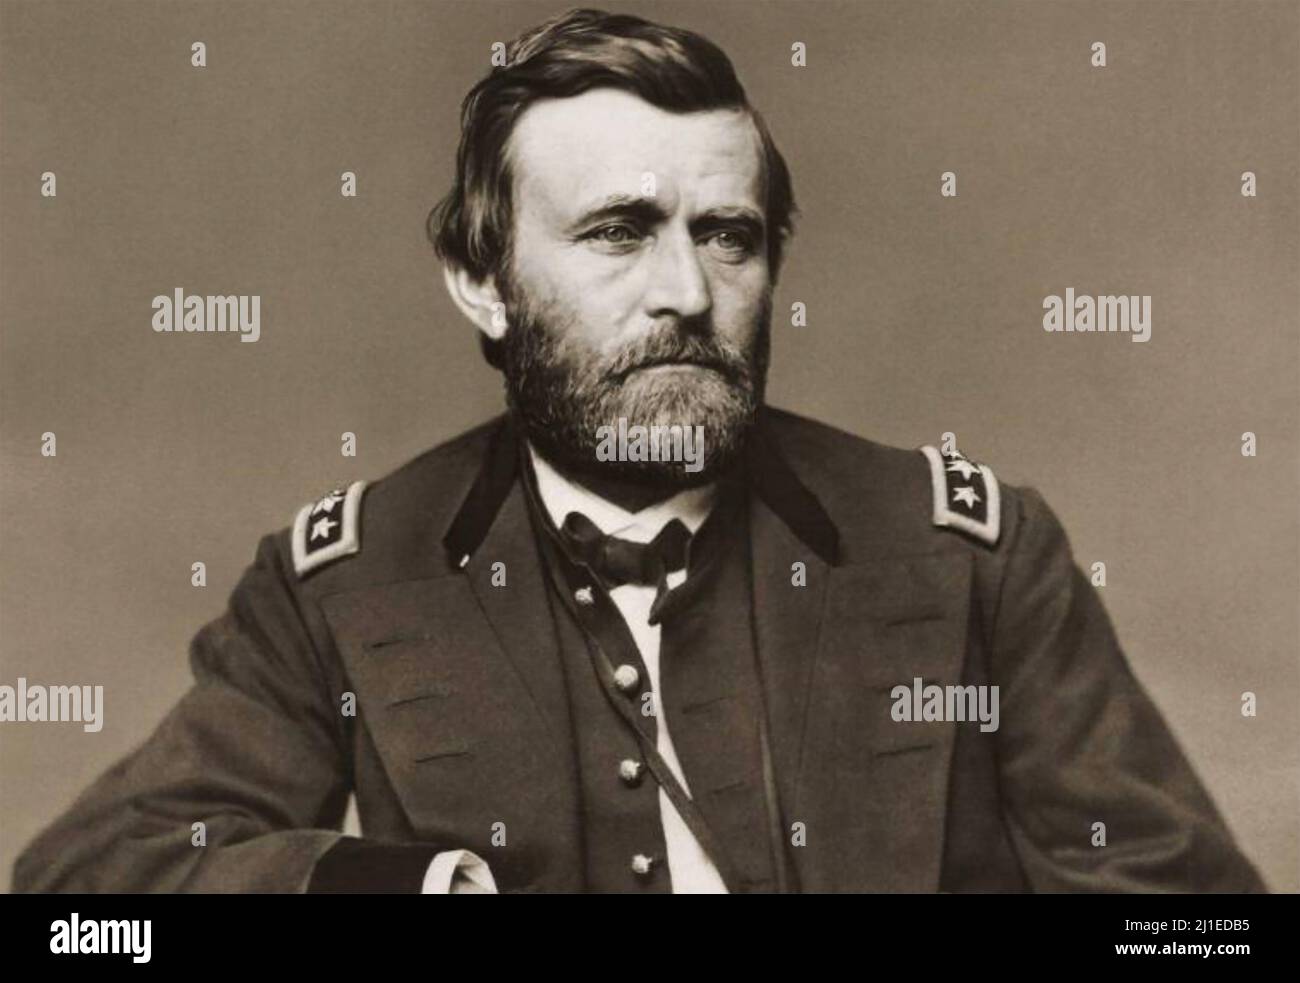 ULYSSES S. GRANT (1822-1885) American Army Officer und später 18. Präsident der Vereinigten Staaten. Stockfoto